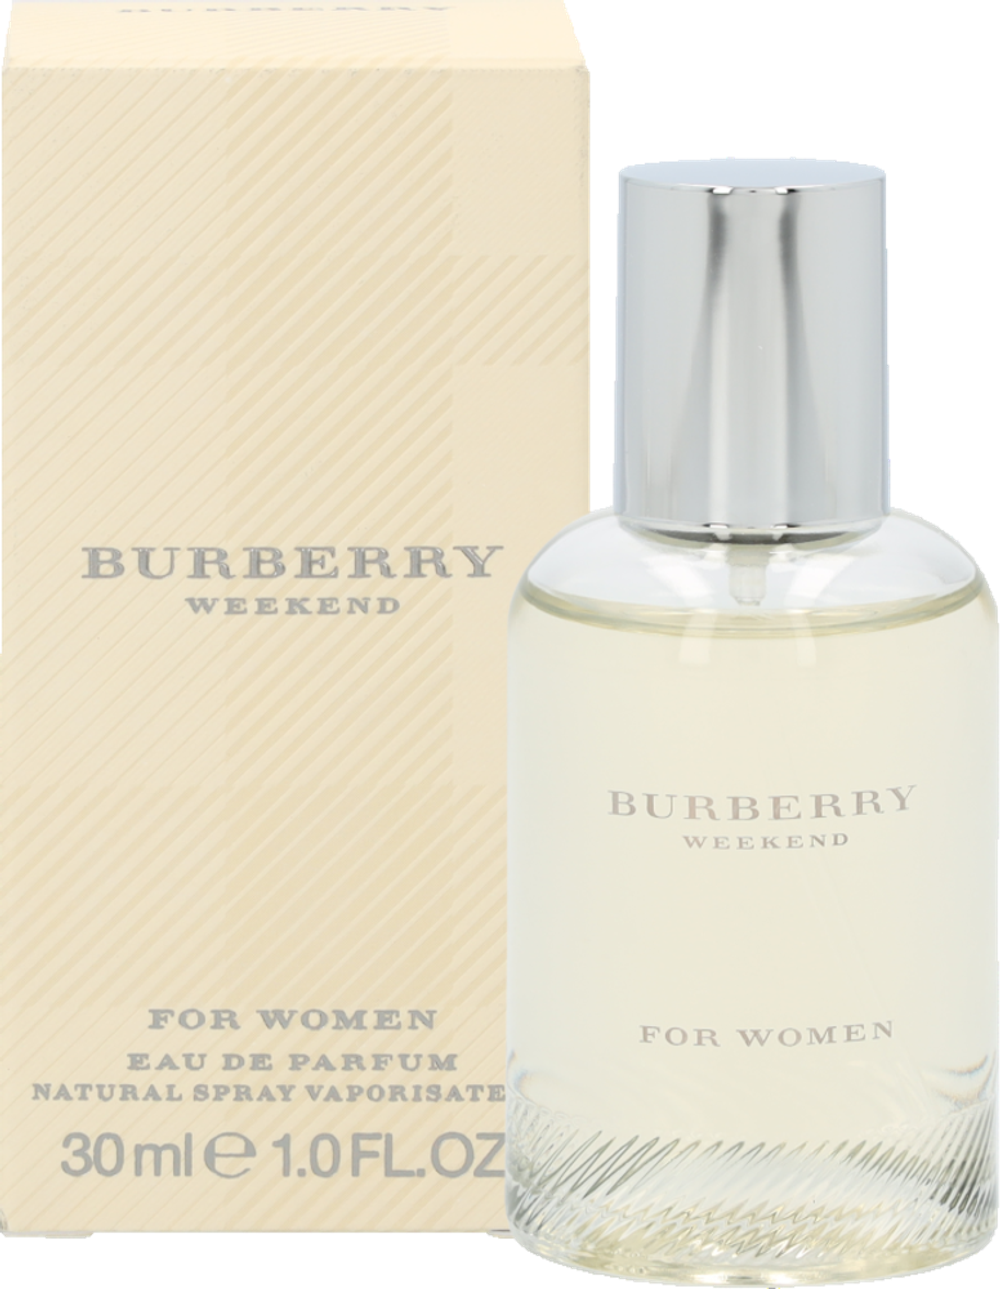 Tilbud på Burberry Weekend For Women Edp Spray fra Fleggaard til 169 kr.